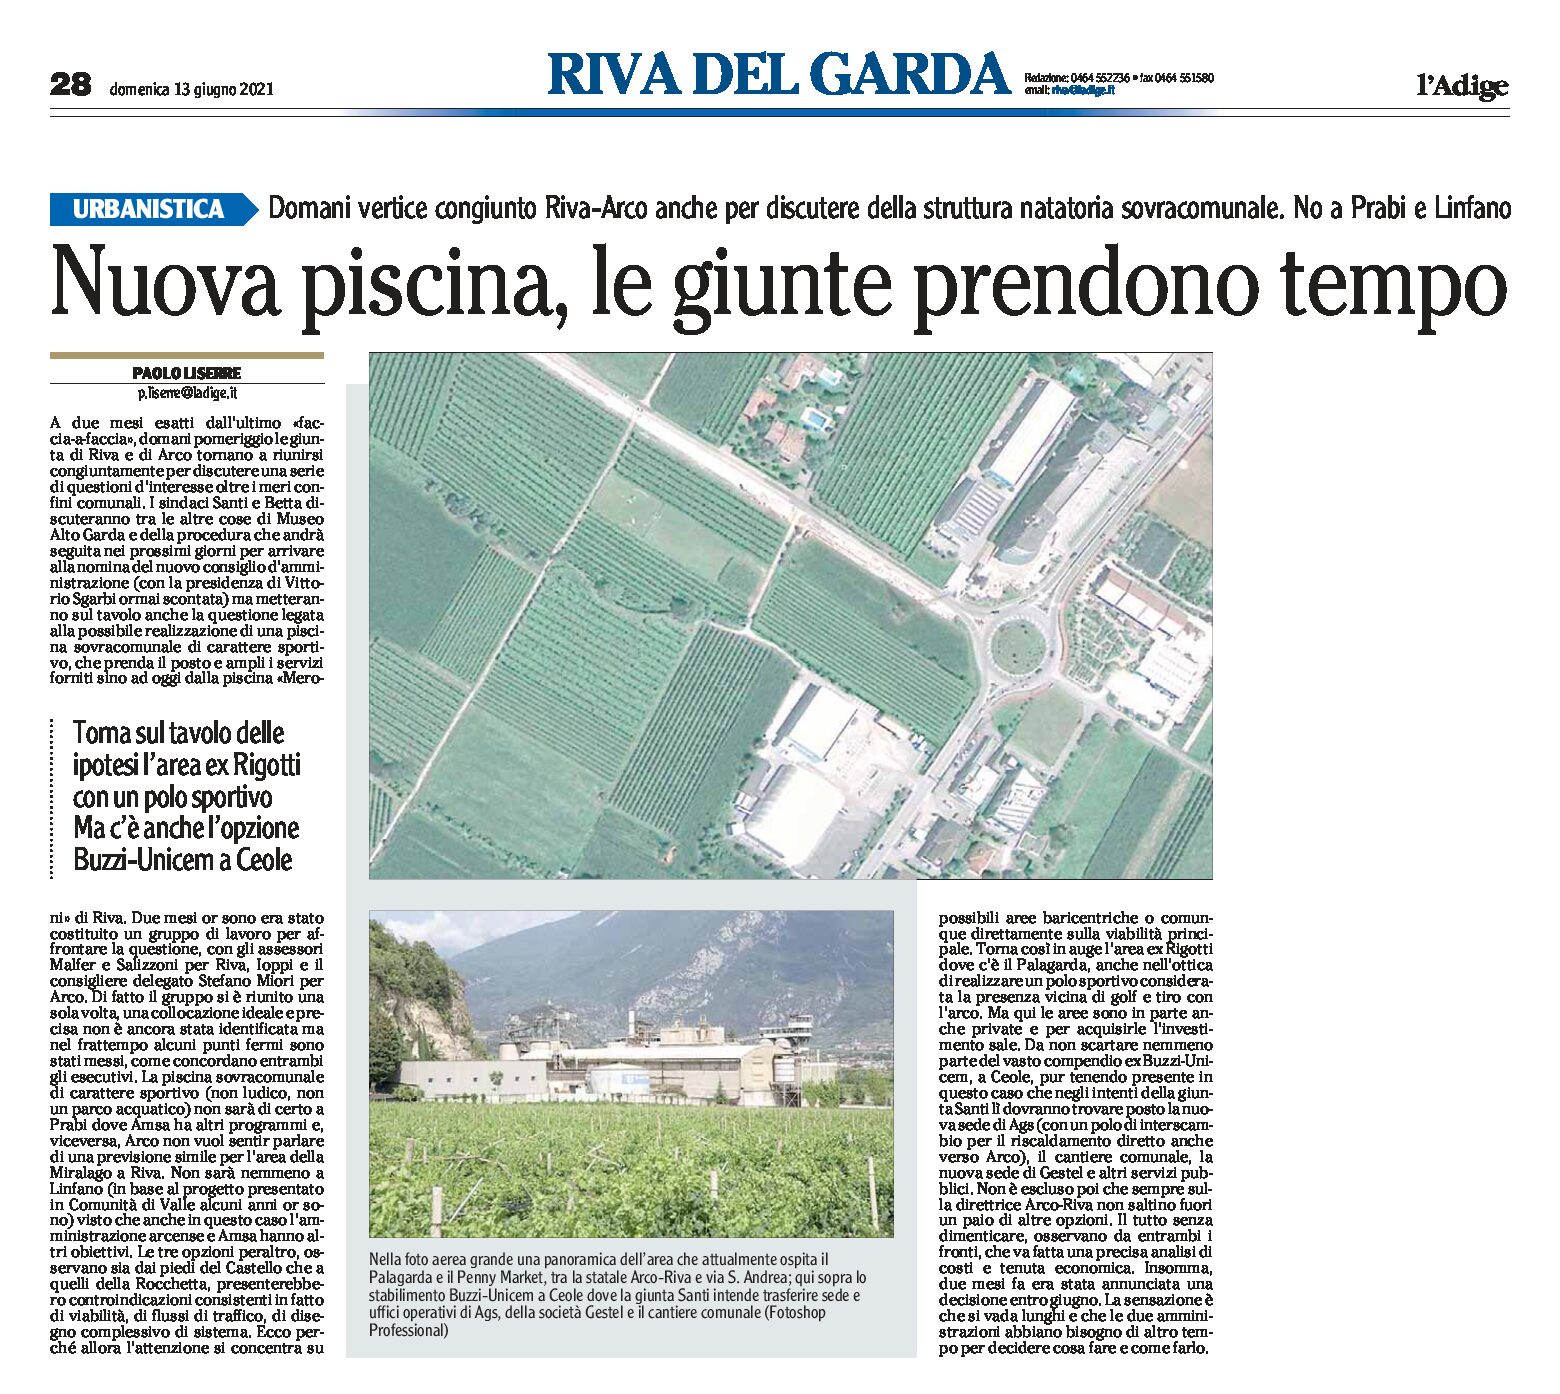 Riva-Arco: nuova piscina, le giunte prendono tempo